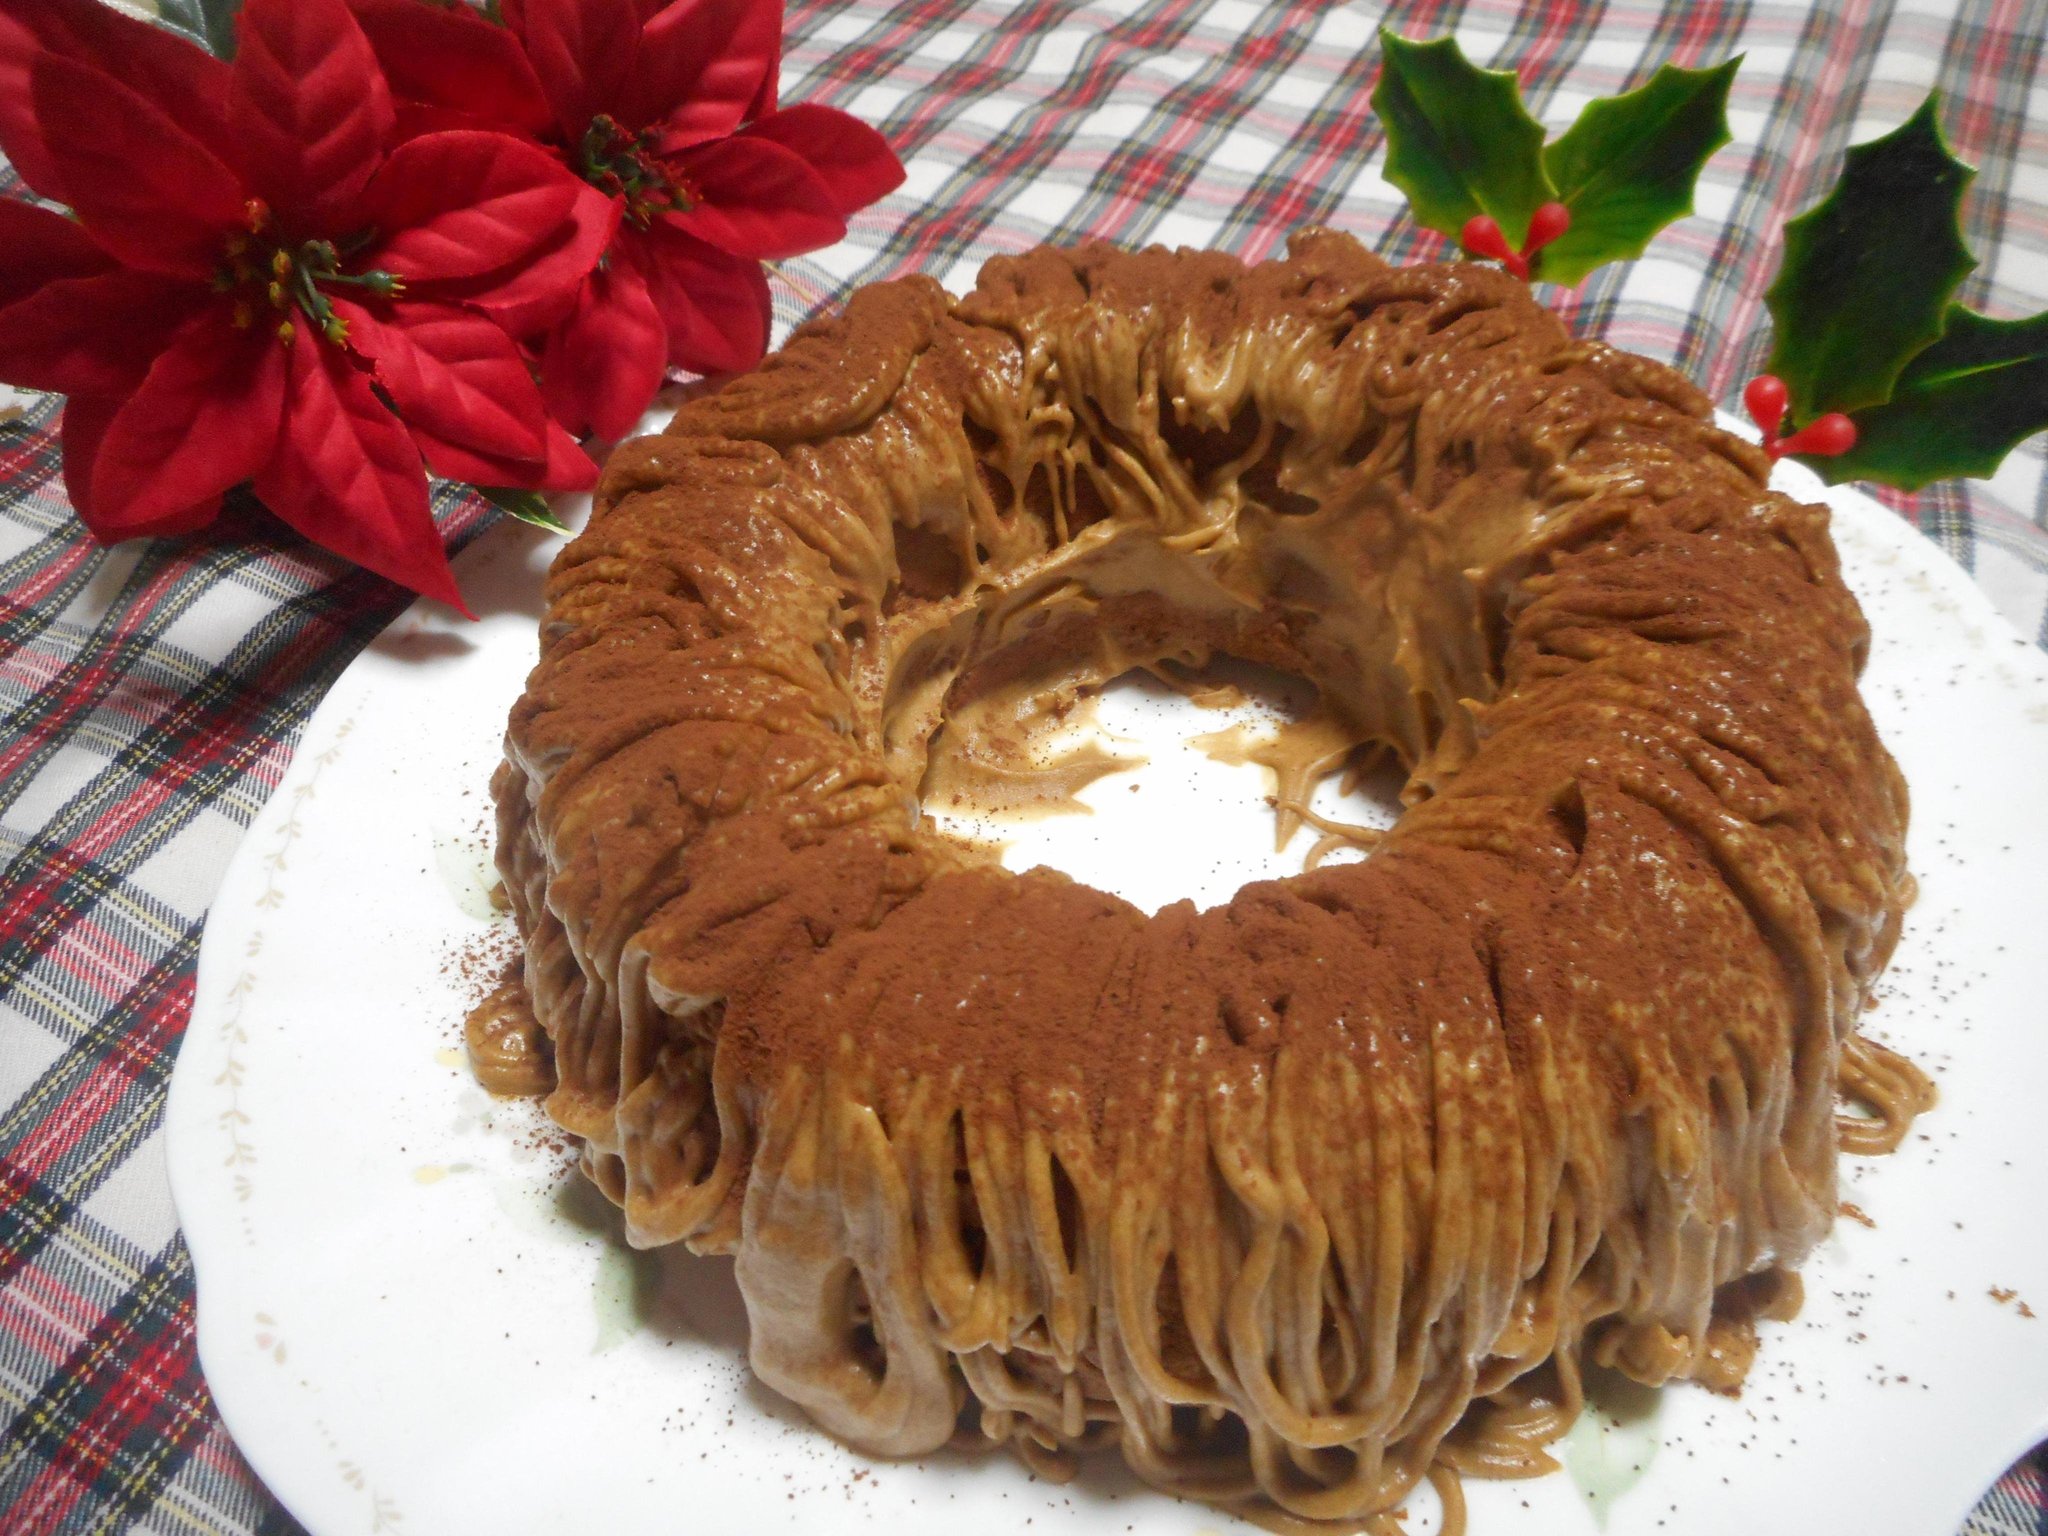 クリスマスケーキは手作りで 18 ﾘﾝｸﾞﾓﾝﾌﾞﾗﾝ 開催 ここぱんはうす 愛知県岡崎市 の21年3月レッスン情報 料理教室検索サイト クスパ